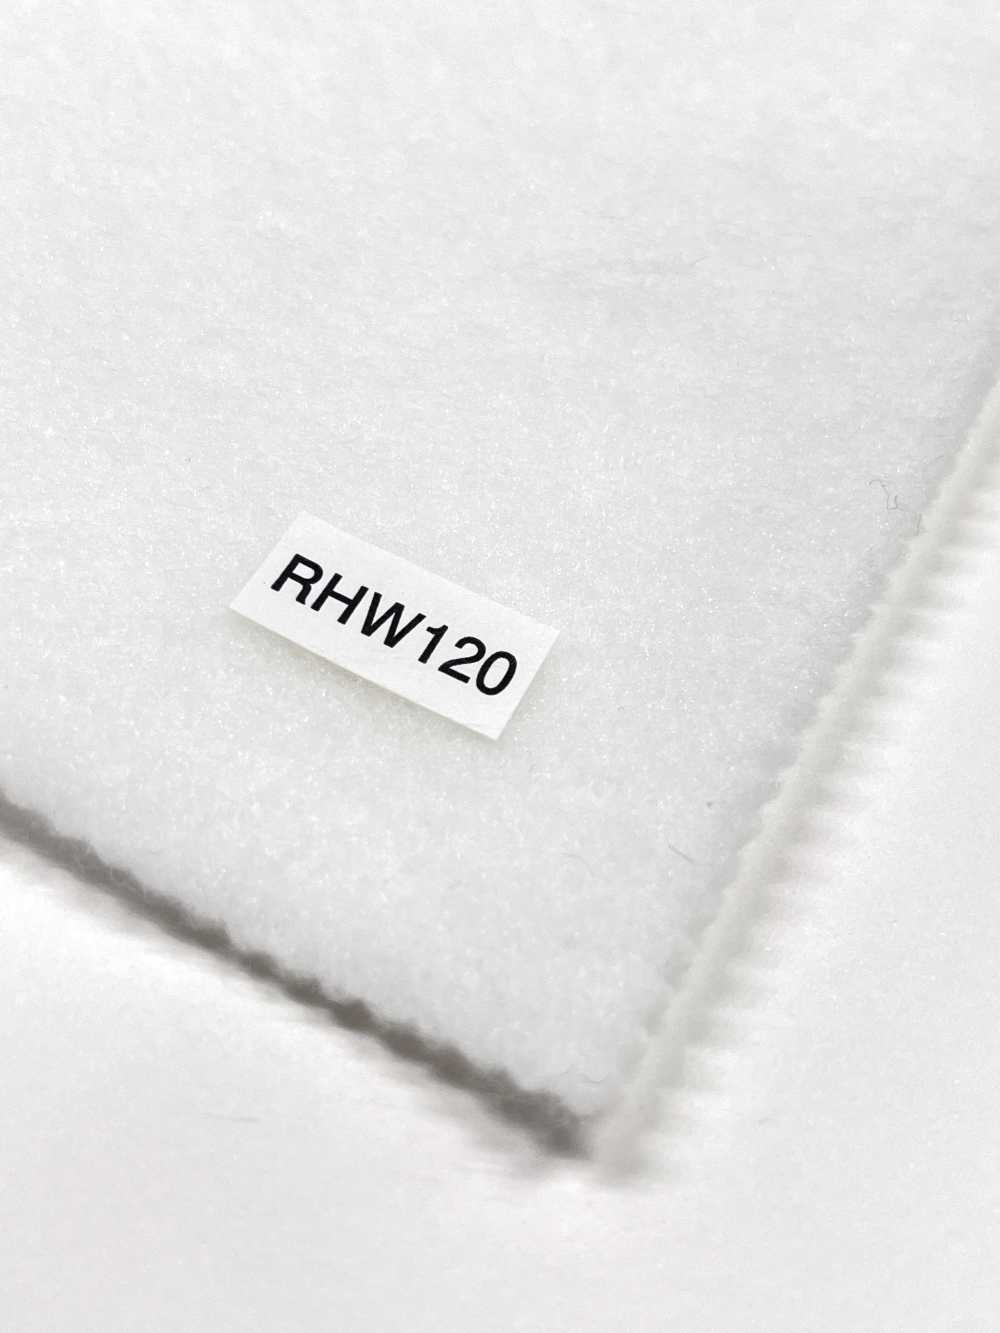 RHW120 Conbel NOWVEN(R) Domit 系列粘合襯軟型[襯布] 康貝爾（Conbel）